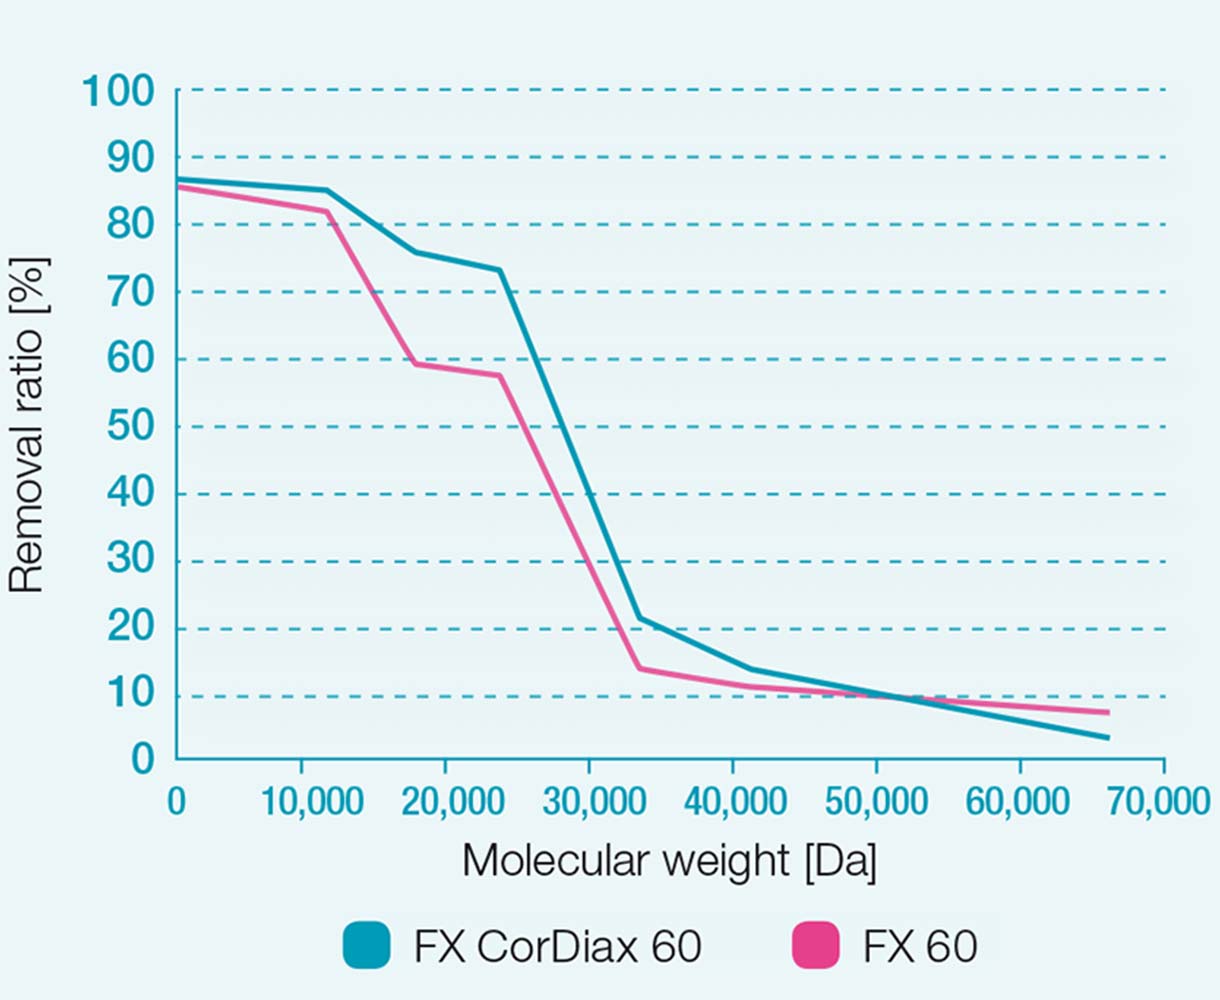 FX 60- ja FX CorDiax 60 –dialysaattorien poistumat